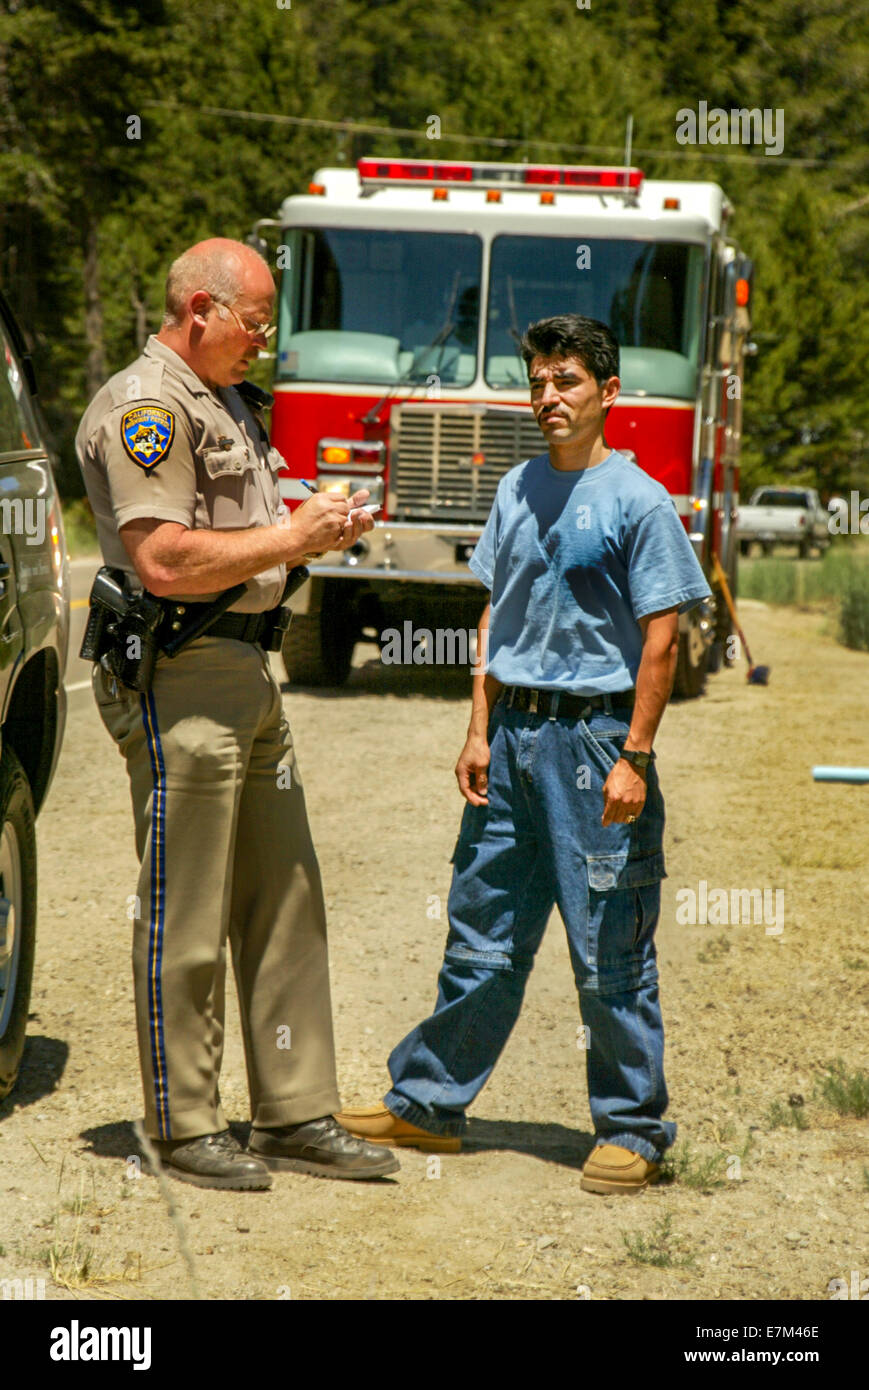 Nach einem Autounfall in Emerald Bay, CA interviews ein Polizist ein Hispanic Zeuge. Hinweis Feuerwehrauto im Hintergrund. Stockfoto